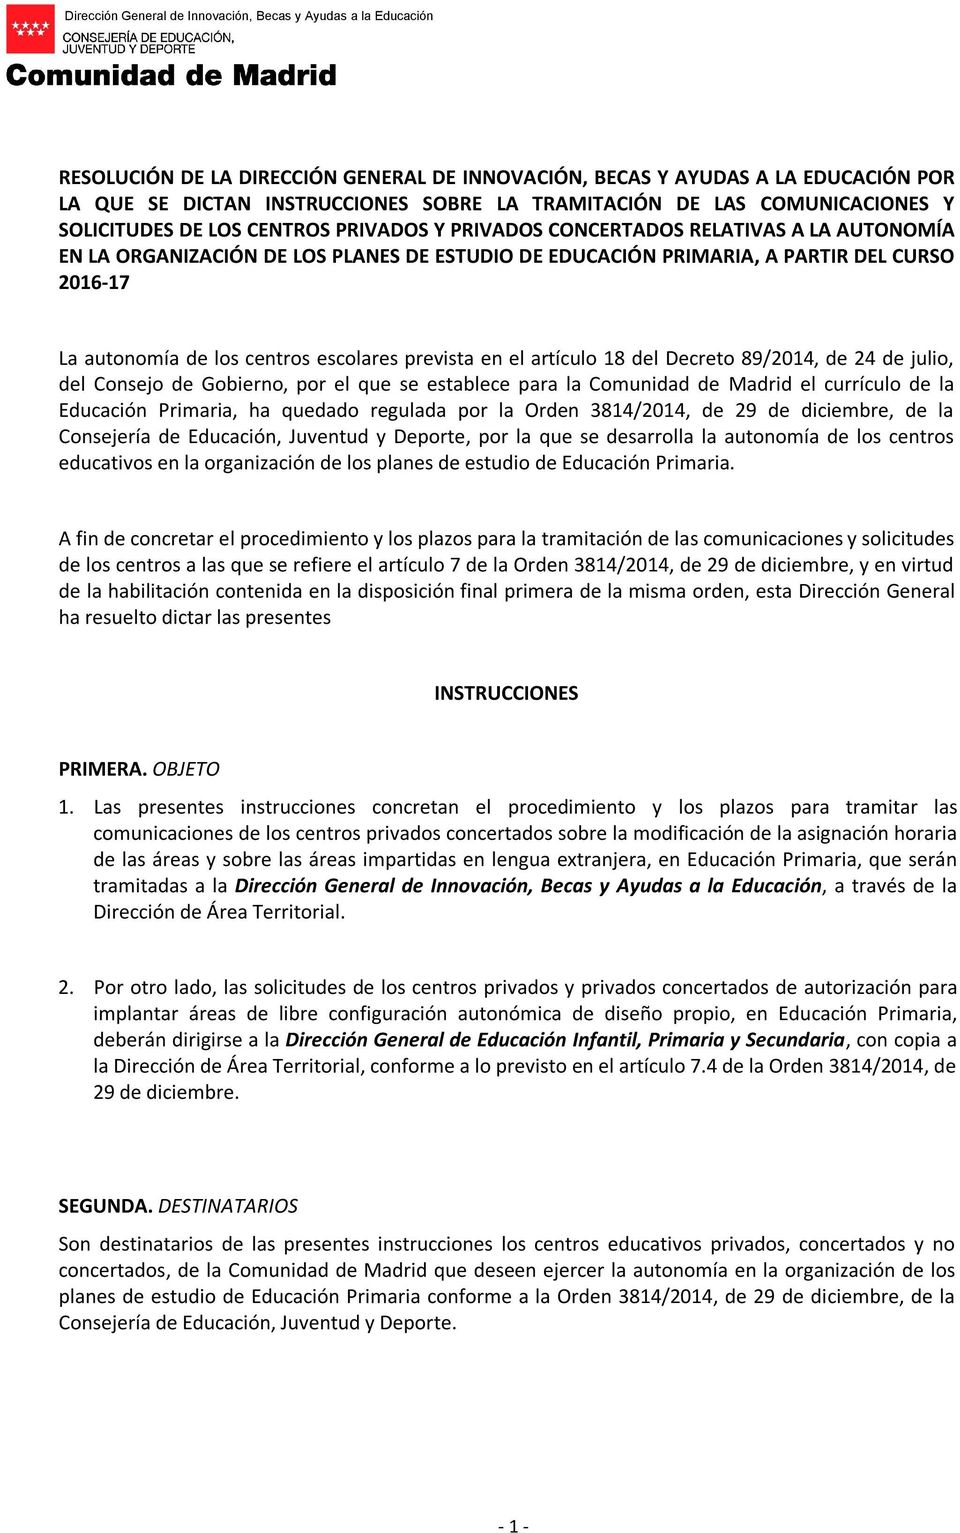 artículo 18 del Decreto 89/2014, de 24 de julio, del Consejo de Gobierno, por el que se establece para la Comunidad de Madrid el currículo de la Educación Primaria, ha quedado regulada por la Orden